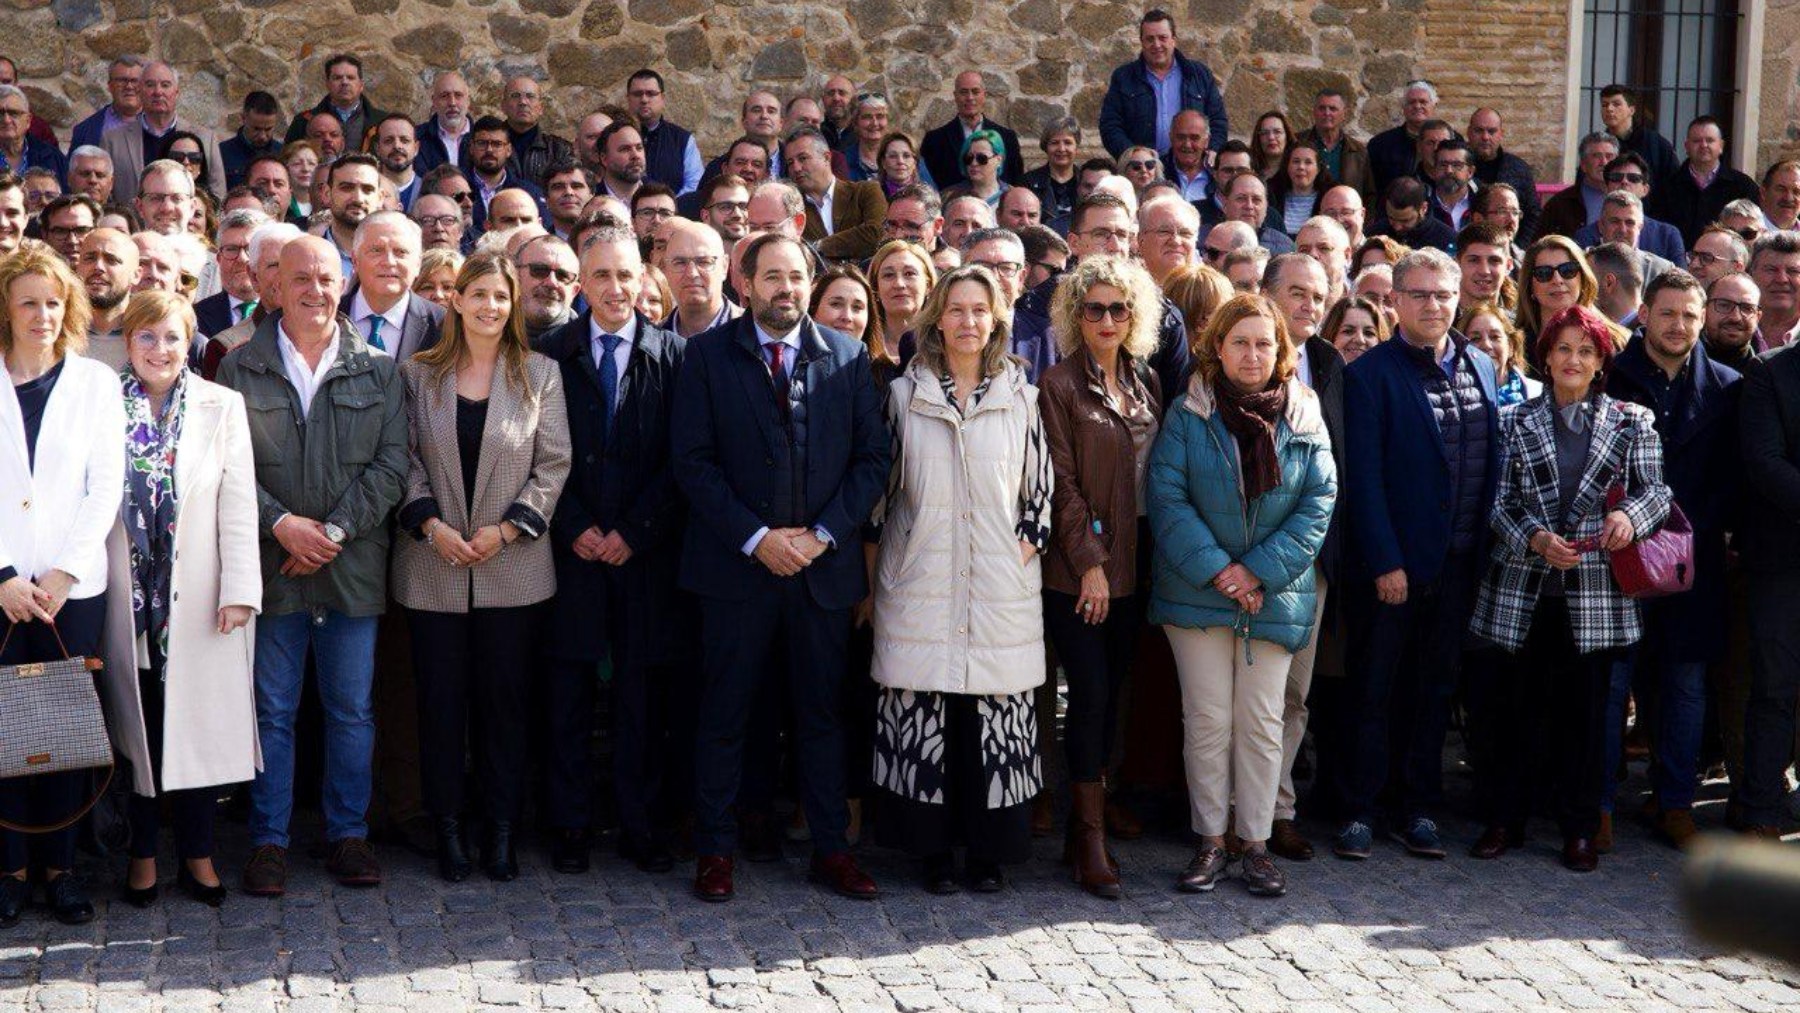 Alcaldes y concejales del PP frente al palacio de Fuensalida